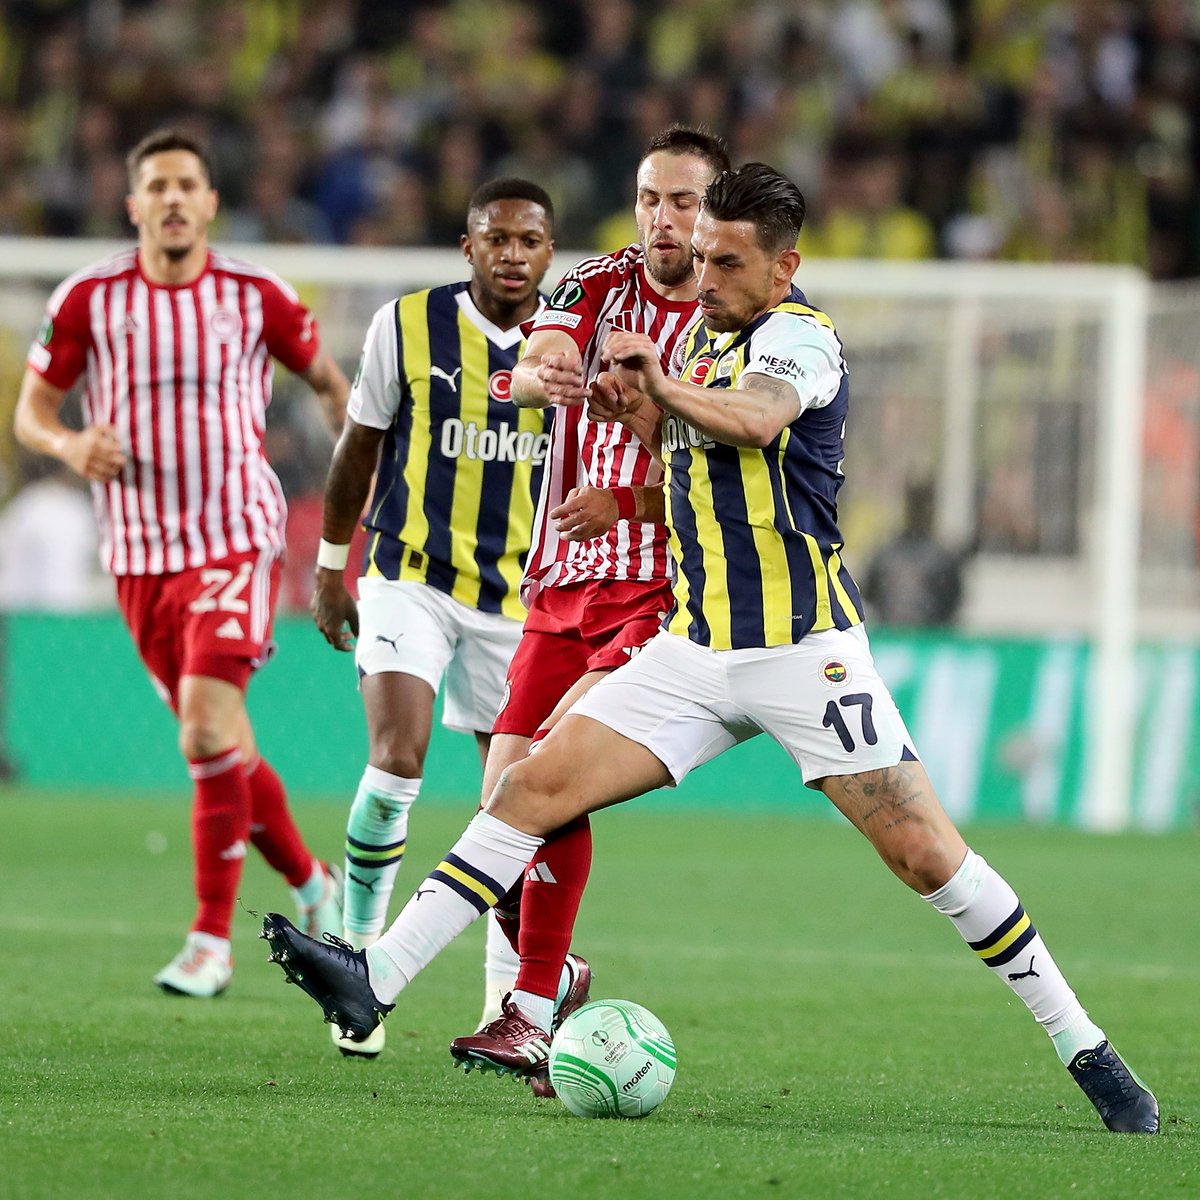 🗣️ İrfan Can Kahveci: 'İlk yarı çok iyi oynadık. En iyi maçlarımızdan biriydi. Erken golle 2-0, 3-0 yapabilirdik... Pozisyonlar bulduk; değerlendiremedik... Üzgünüz... Penaltılarda olmaması bizi çok yordu. Önümüze bakacağız...' #Fenerbahçe #FBvOLY